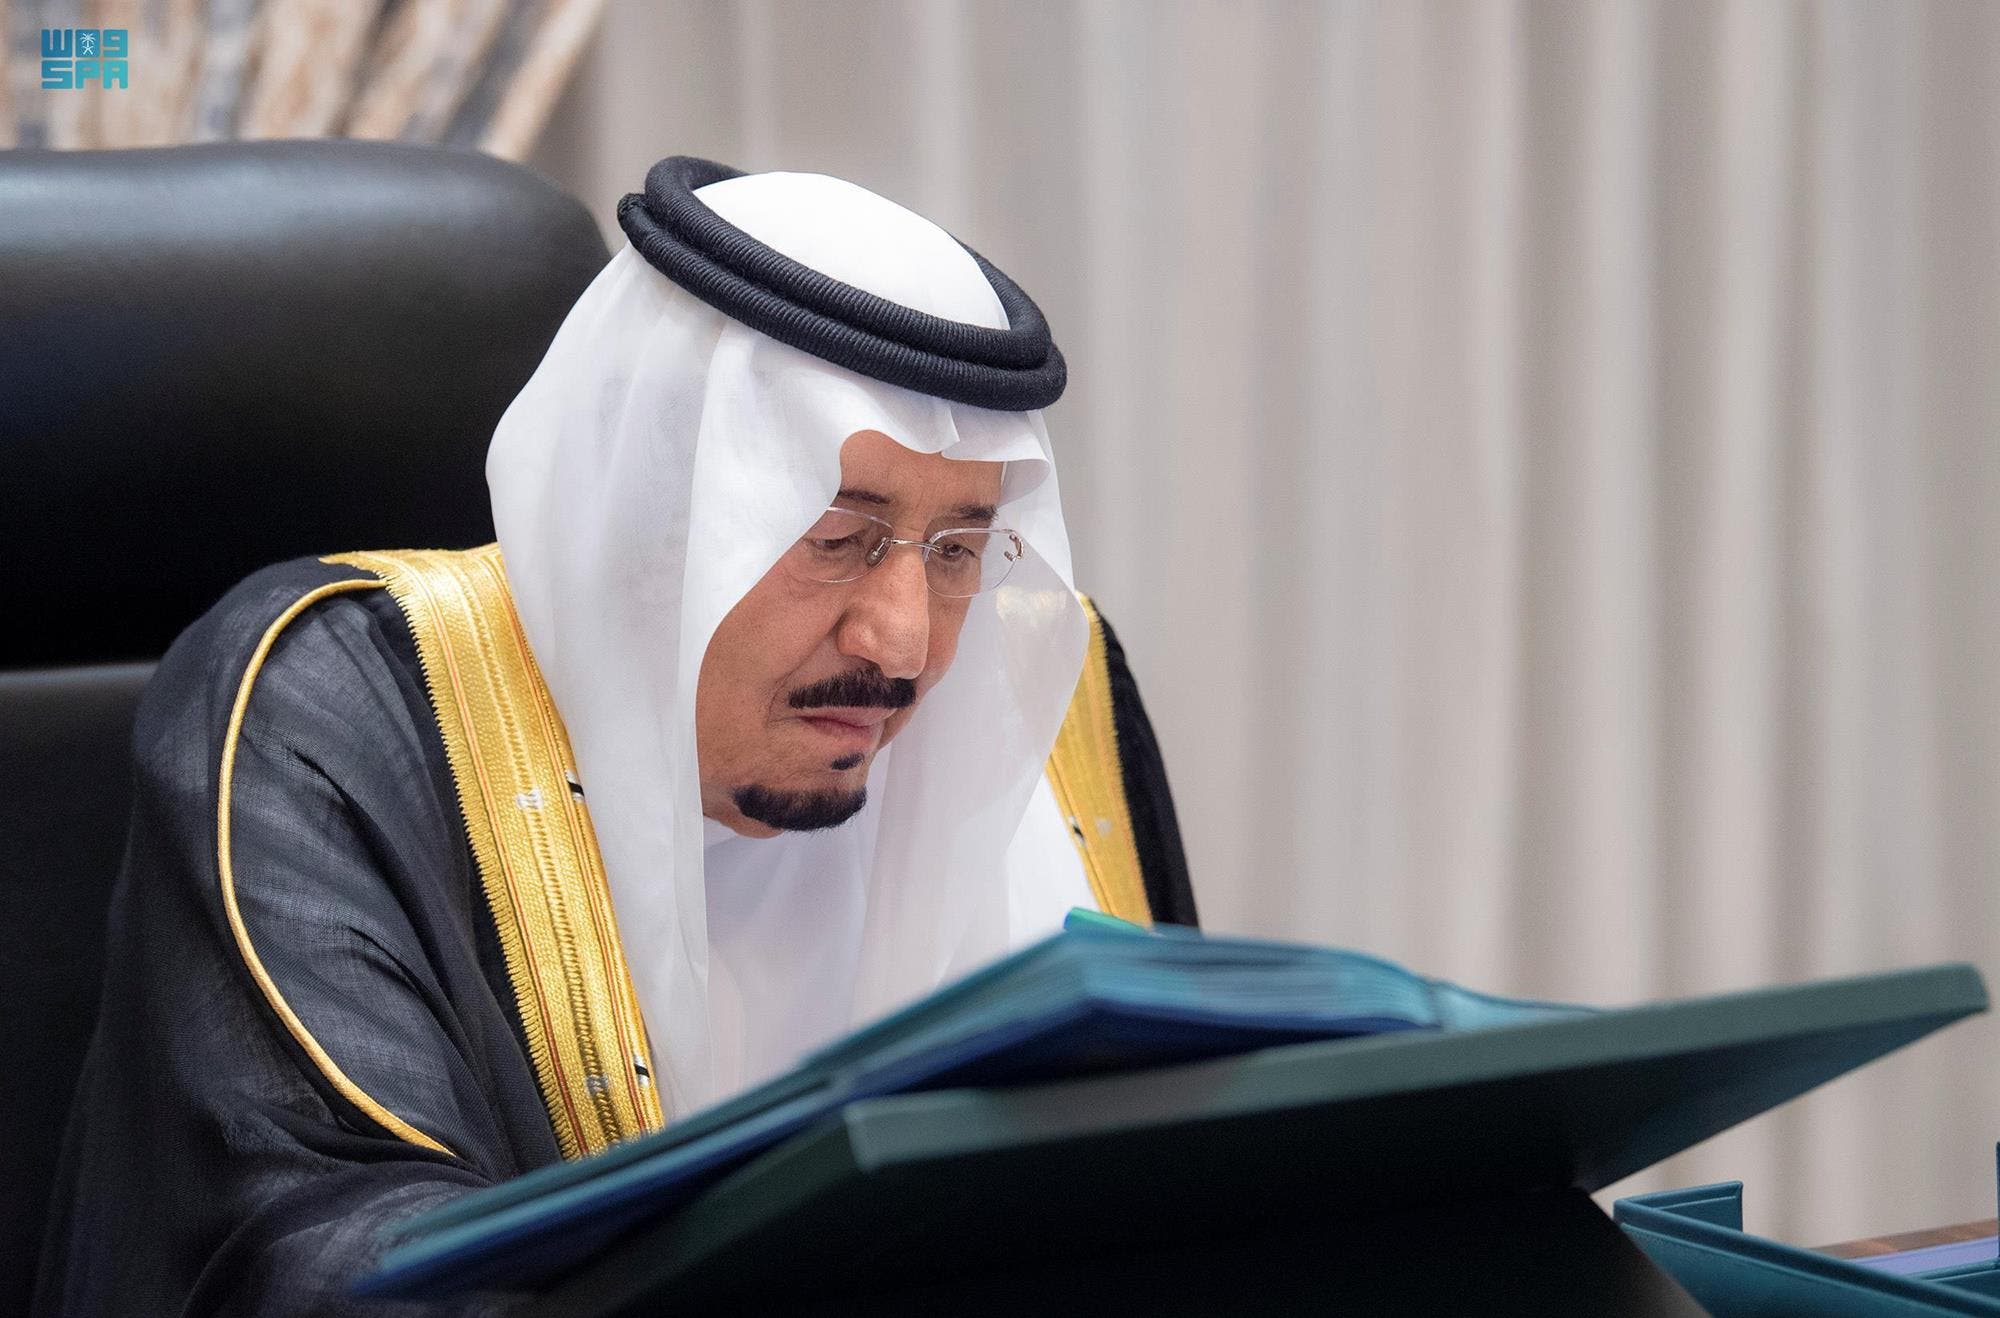 الملك سلمان يترأس جلسة مجلس الوزراء السعودي عن بُعد